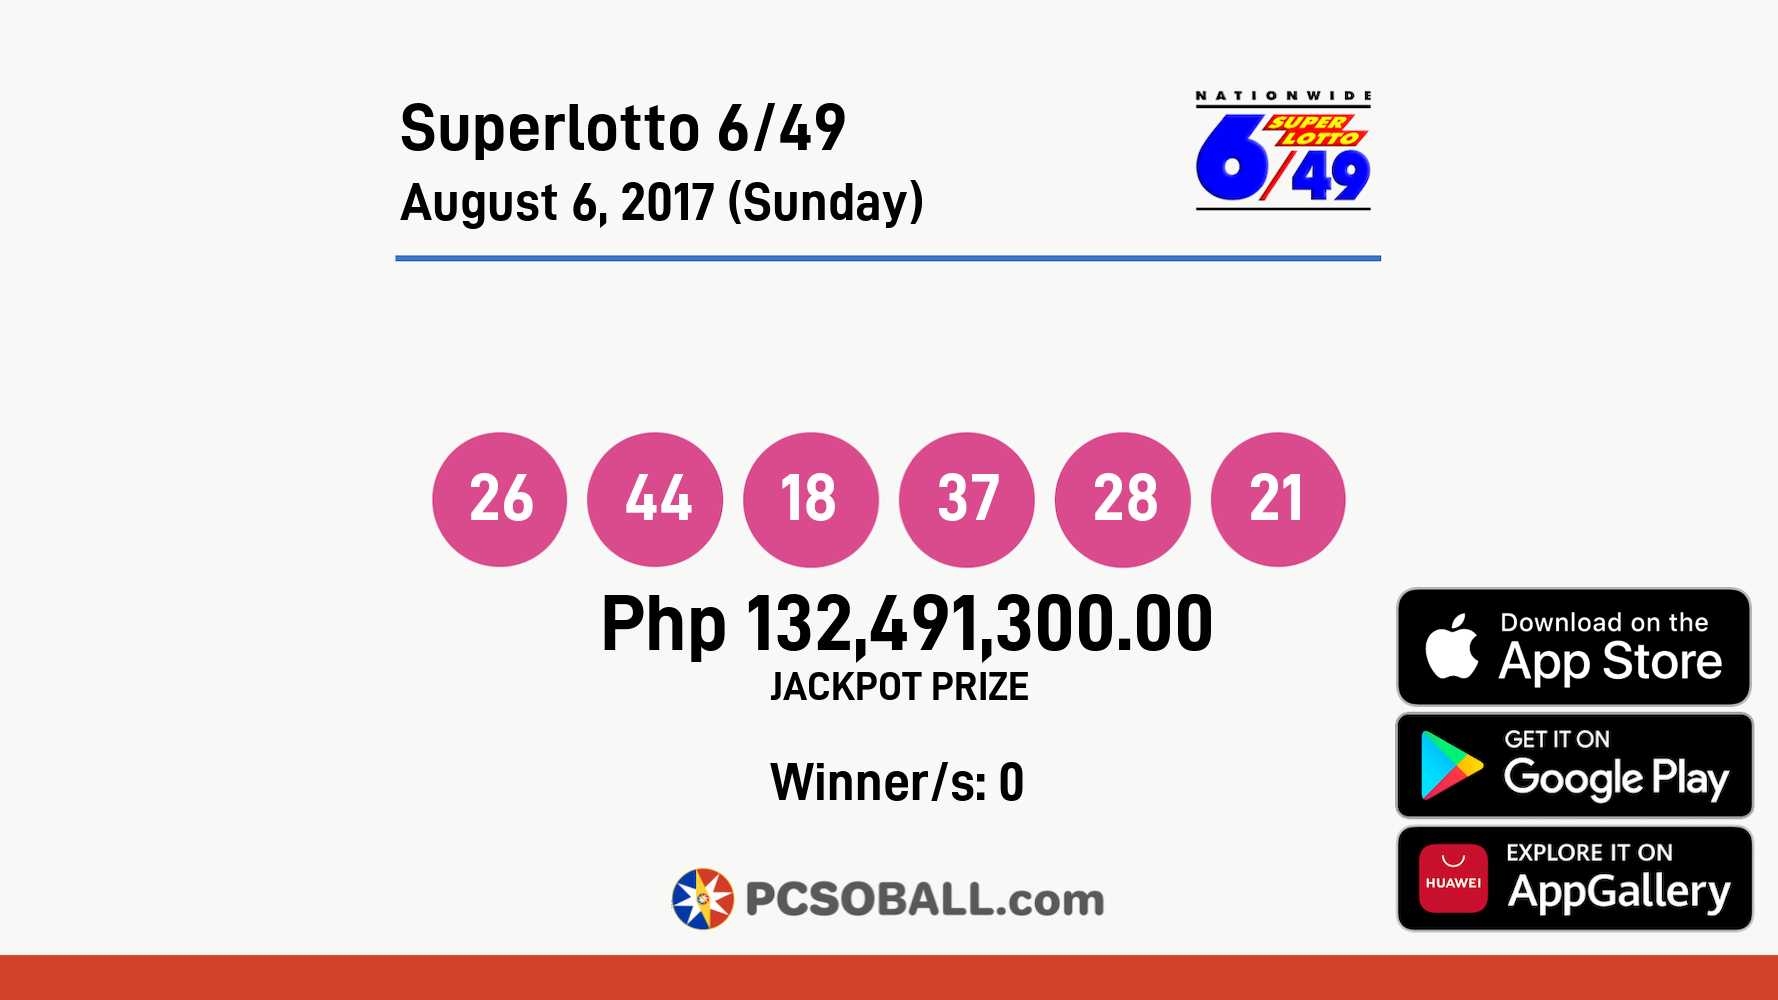 Superlotto 6/49 August 6, 2017 (Sunday) Result